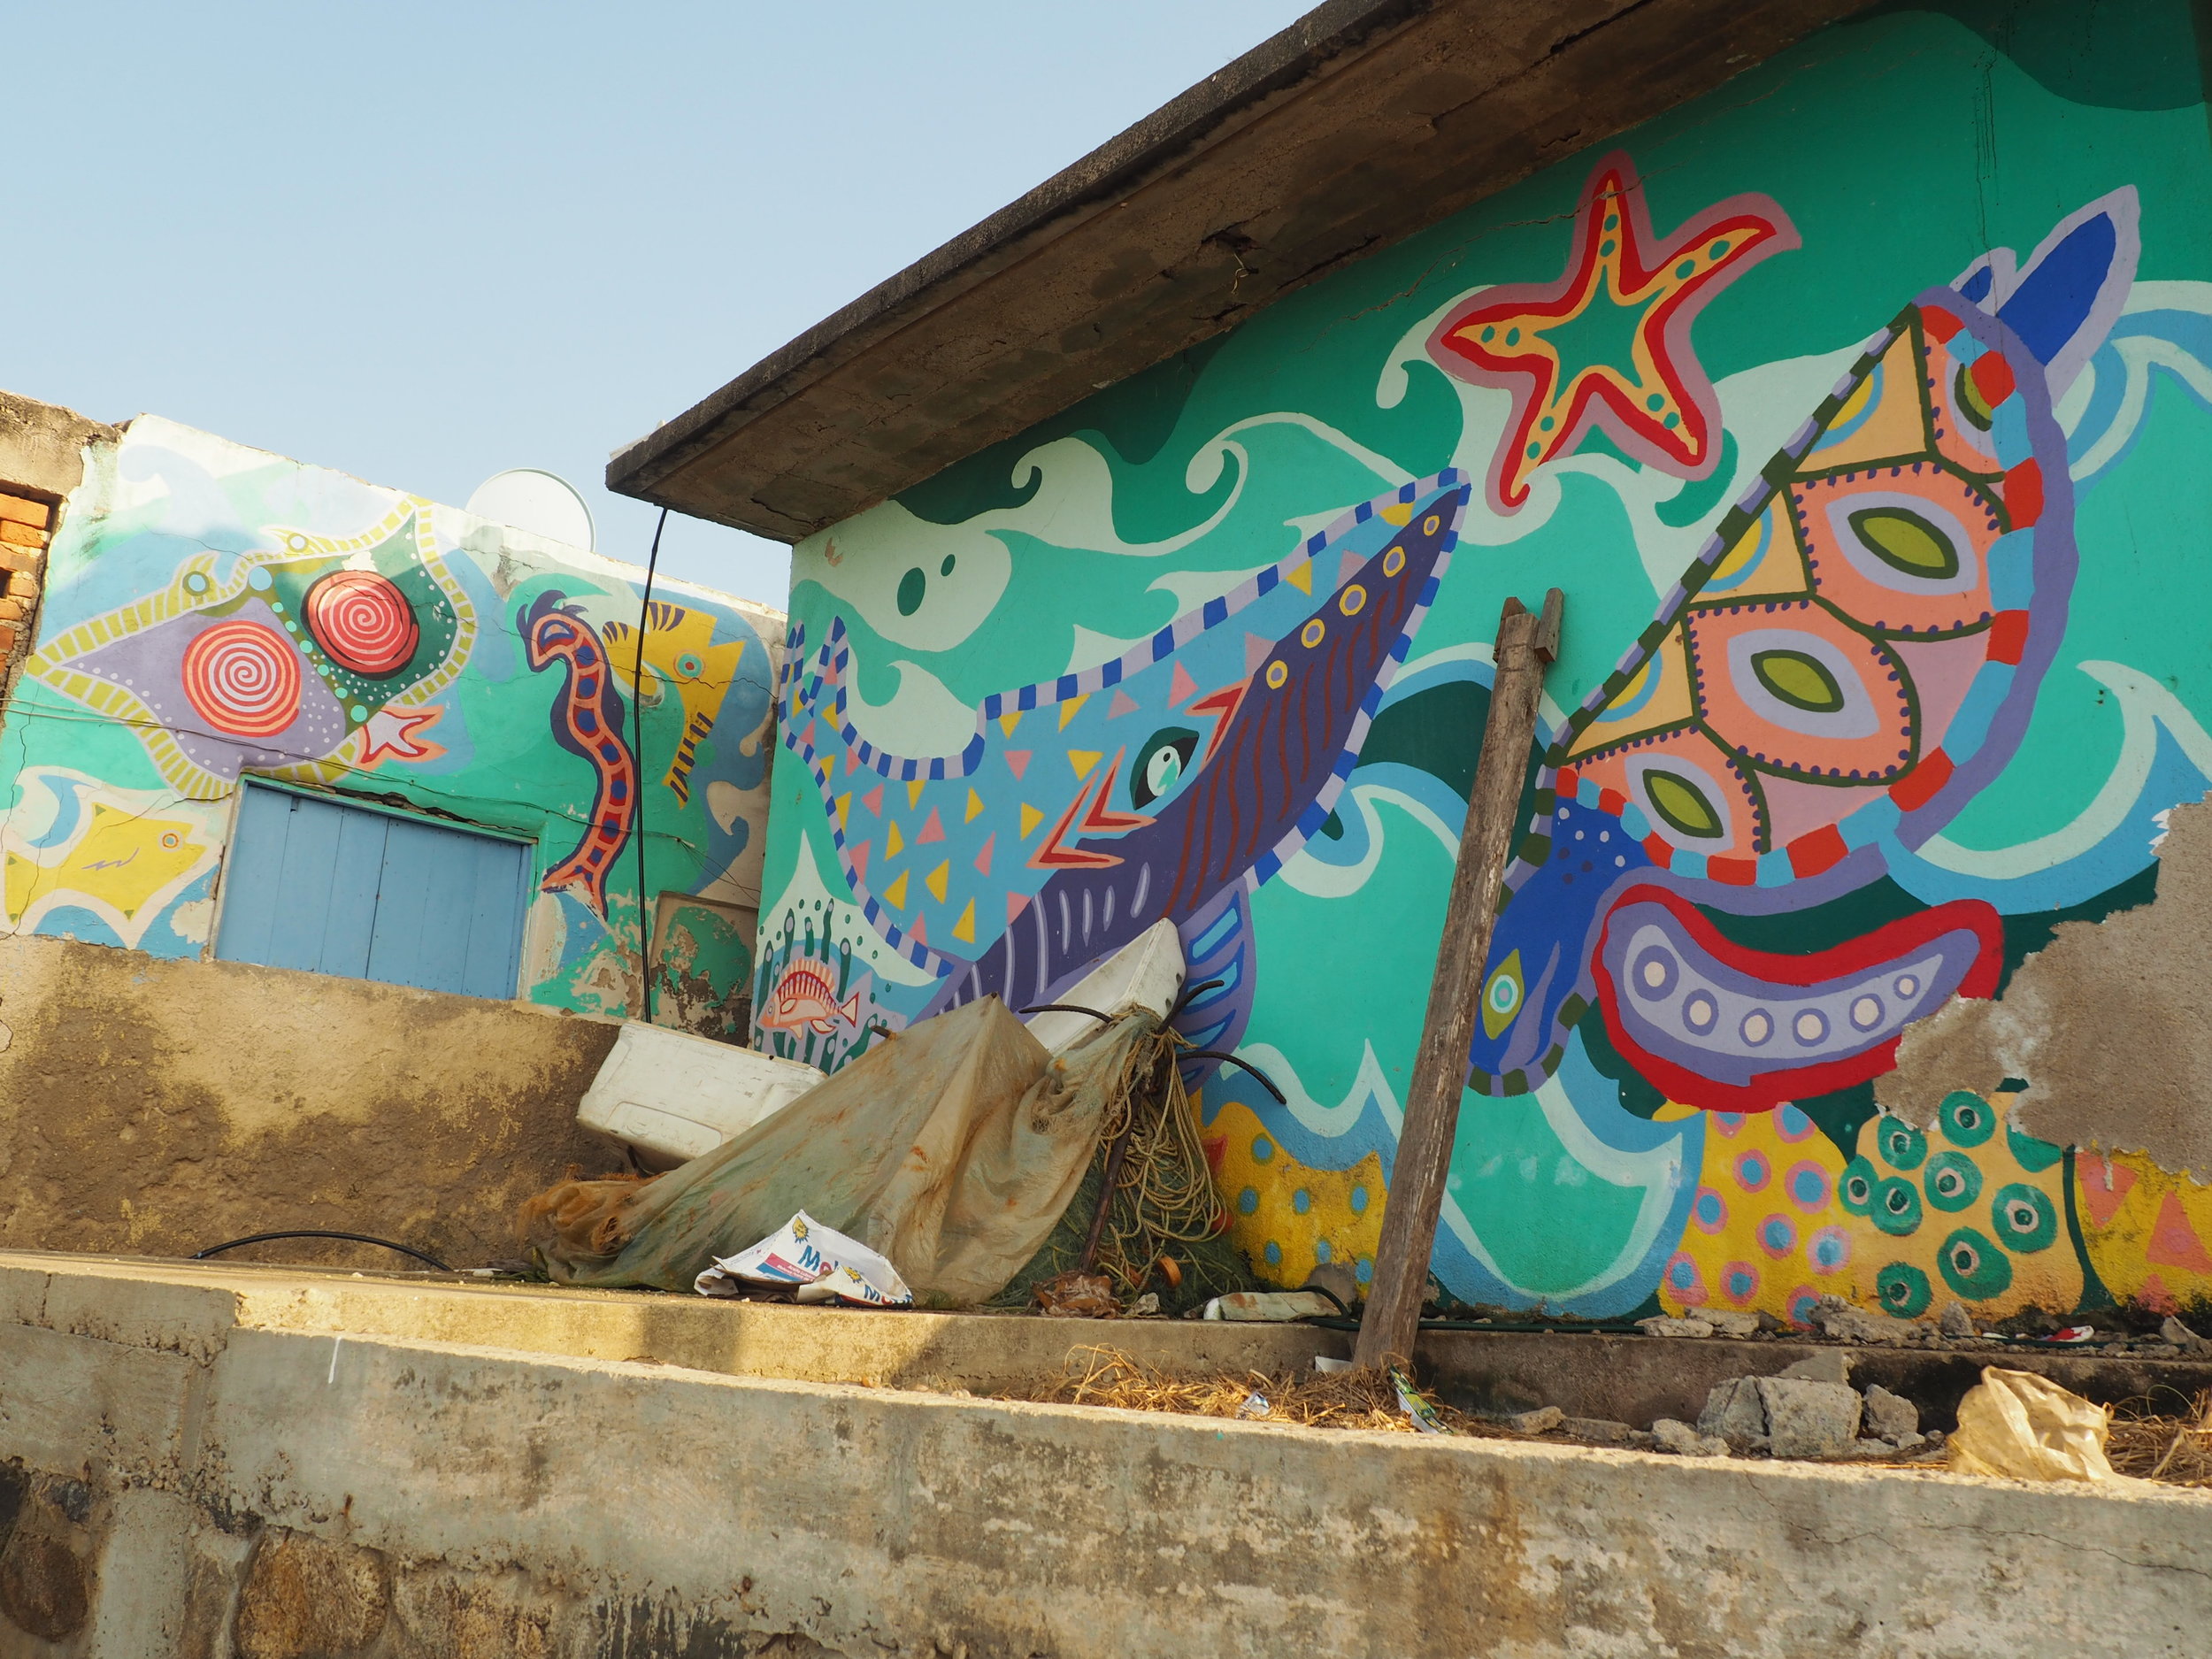 Beautiful wall art in Chimo